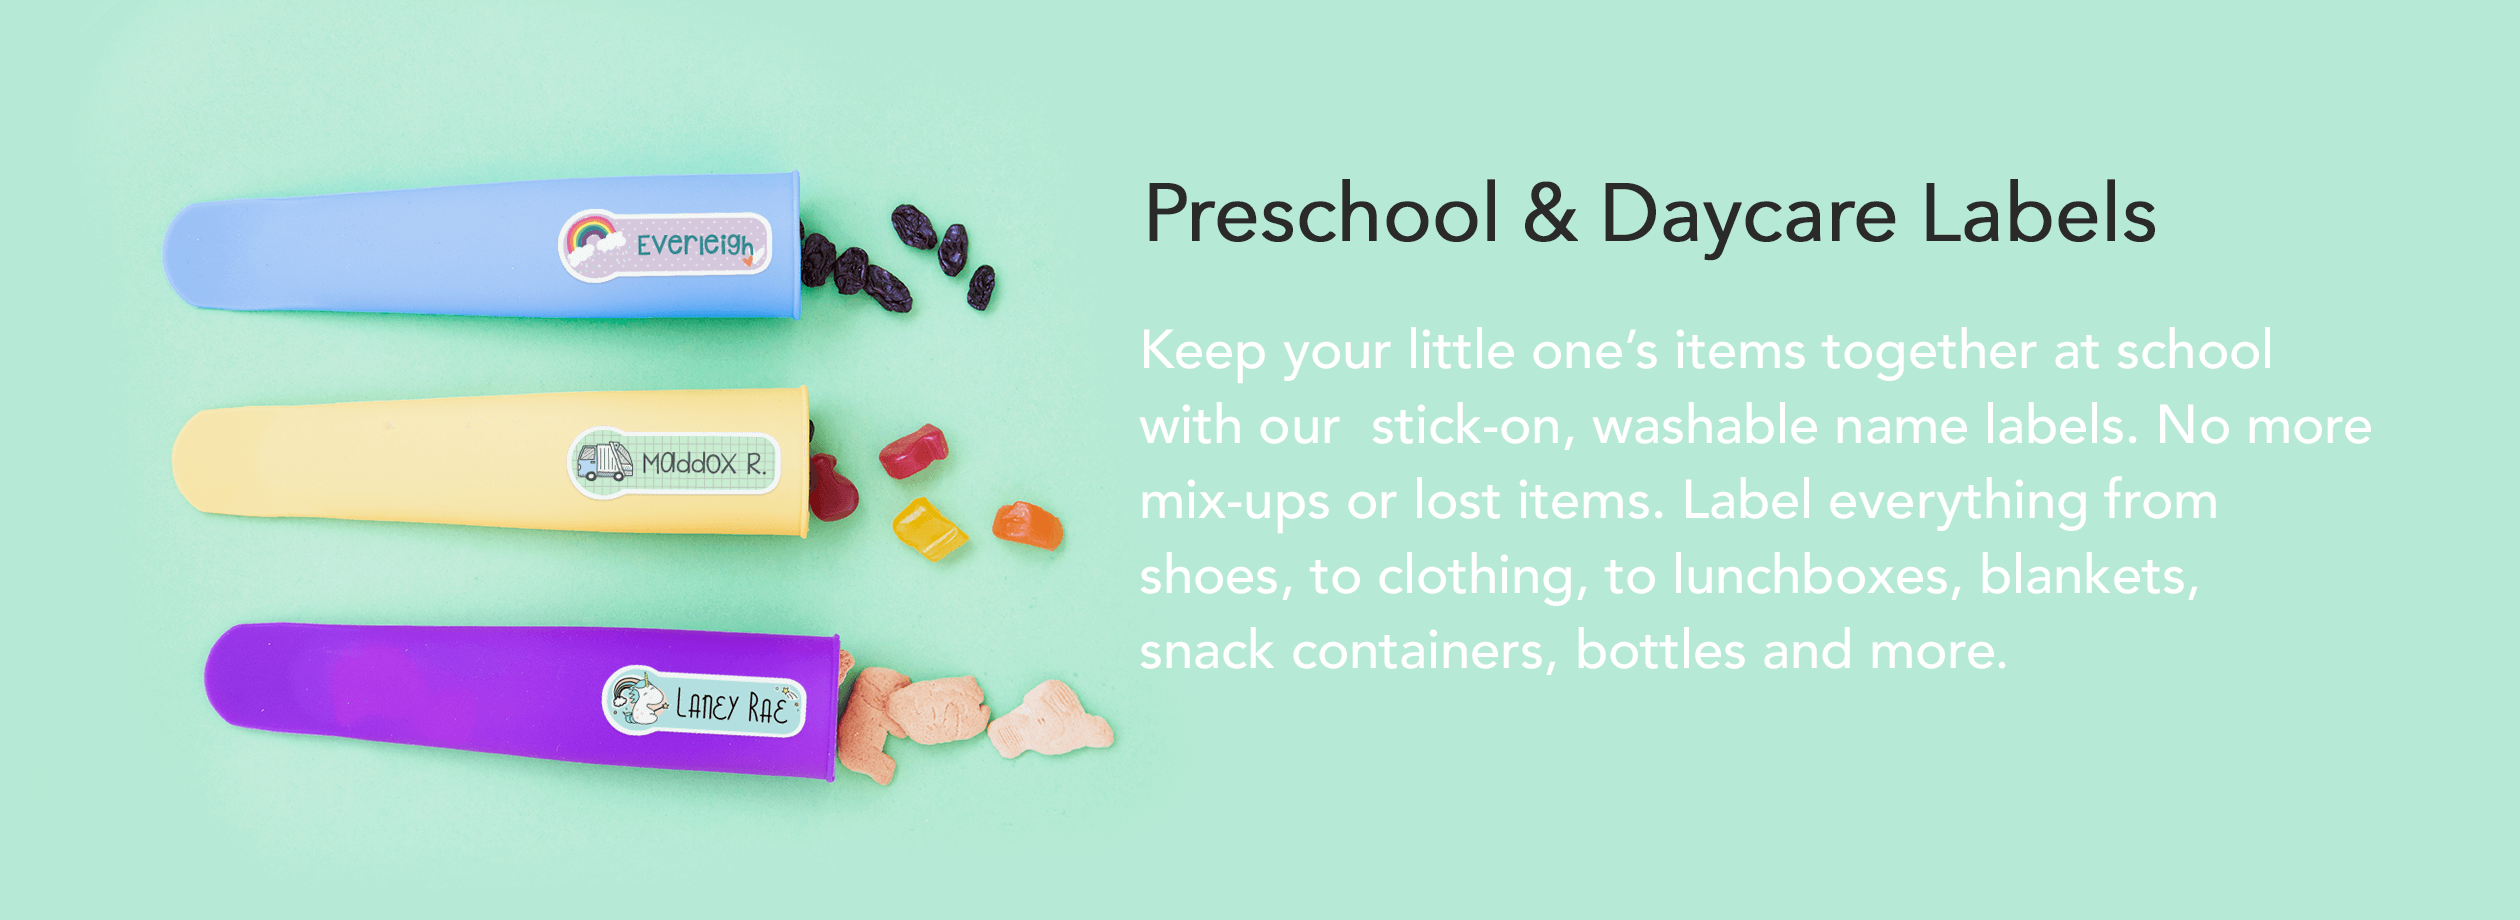 Little Kids Labels  Preschool & Daycare Labels & Stickers – LabelDaddy